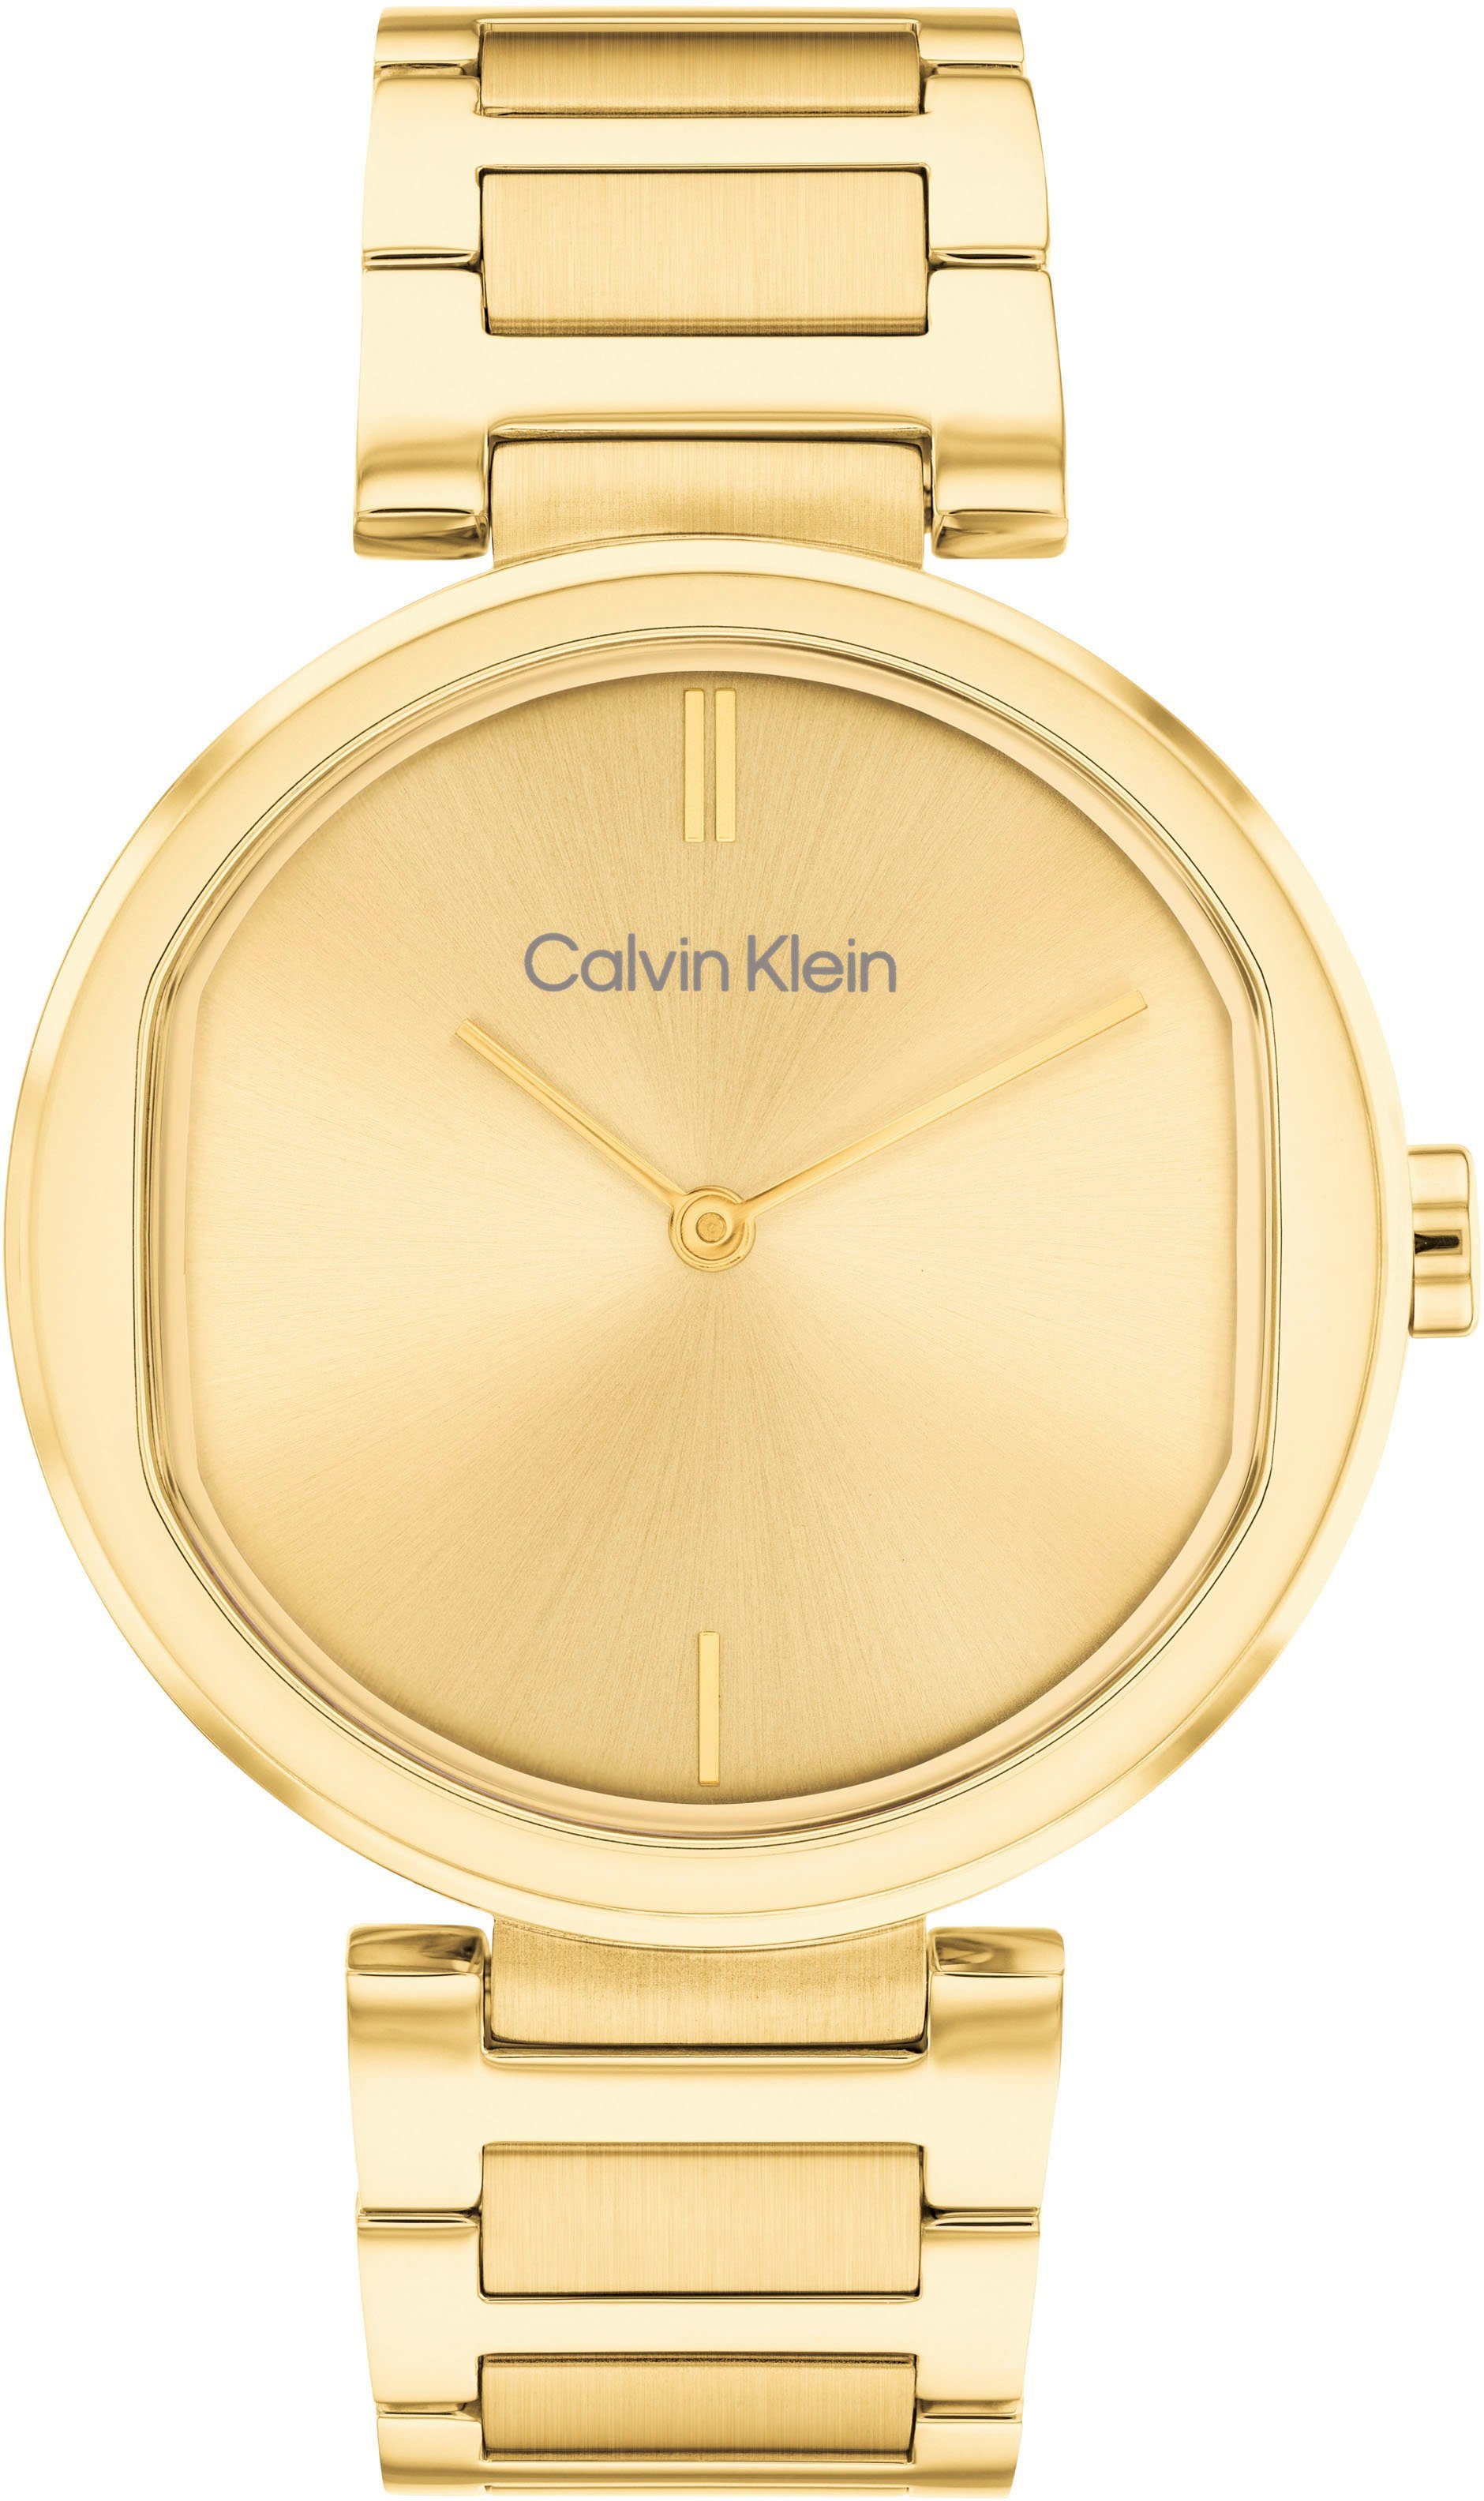 Calvin Klein Quarzuhr TIMELESS, 25200252, Armbanduhr, Damenuhr, Mineralglas, IP-Beschichtung